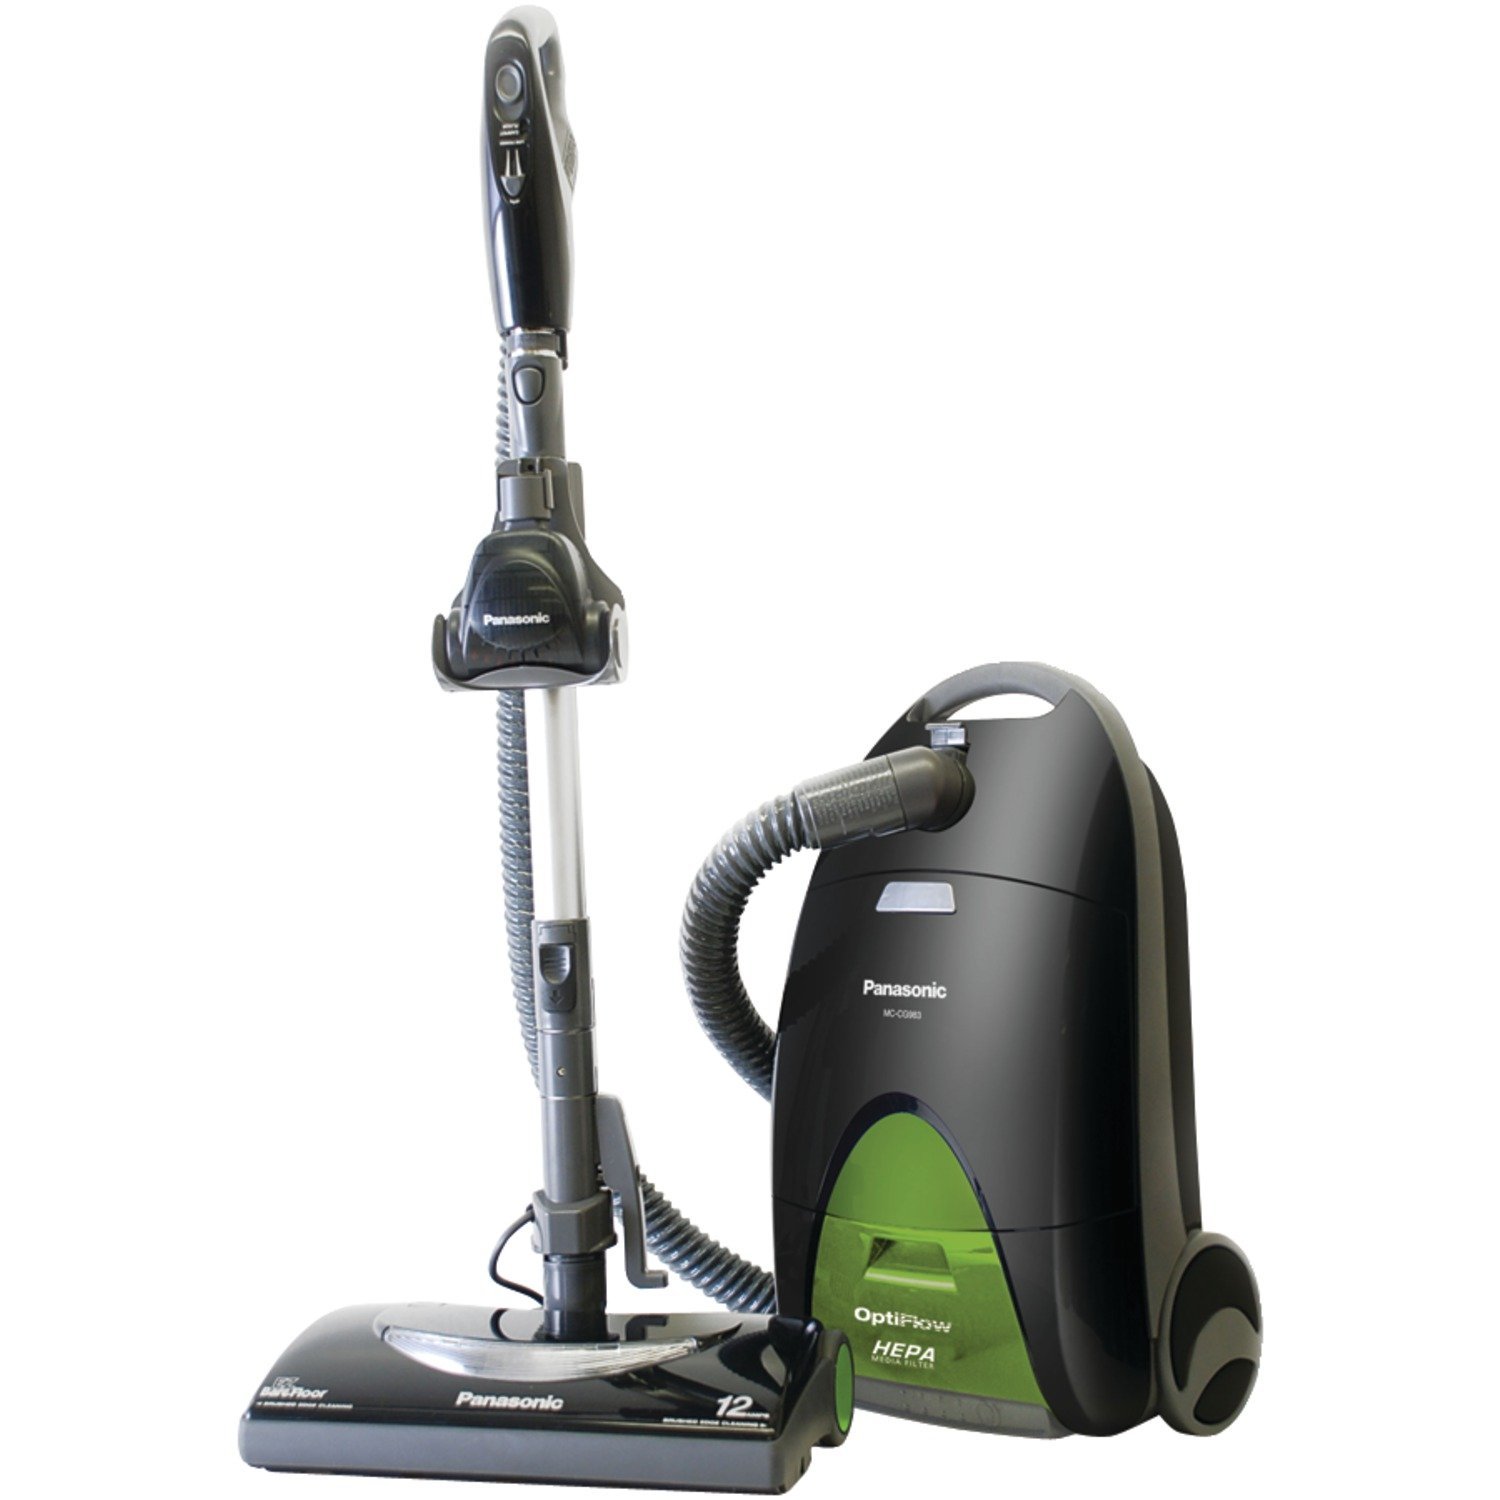 Vacuum cleaner repairs in New Barnet